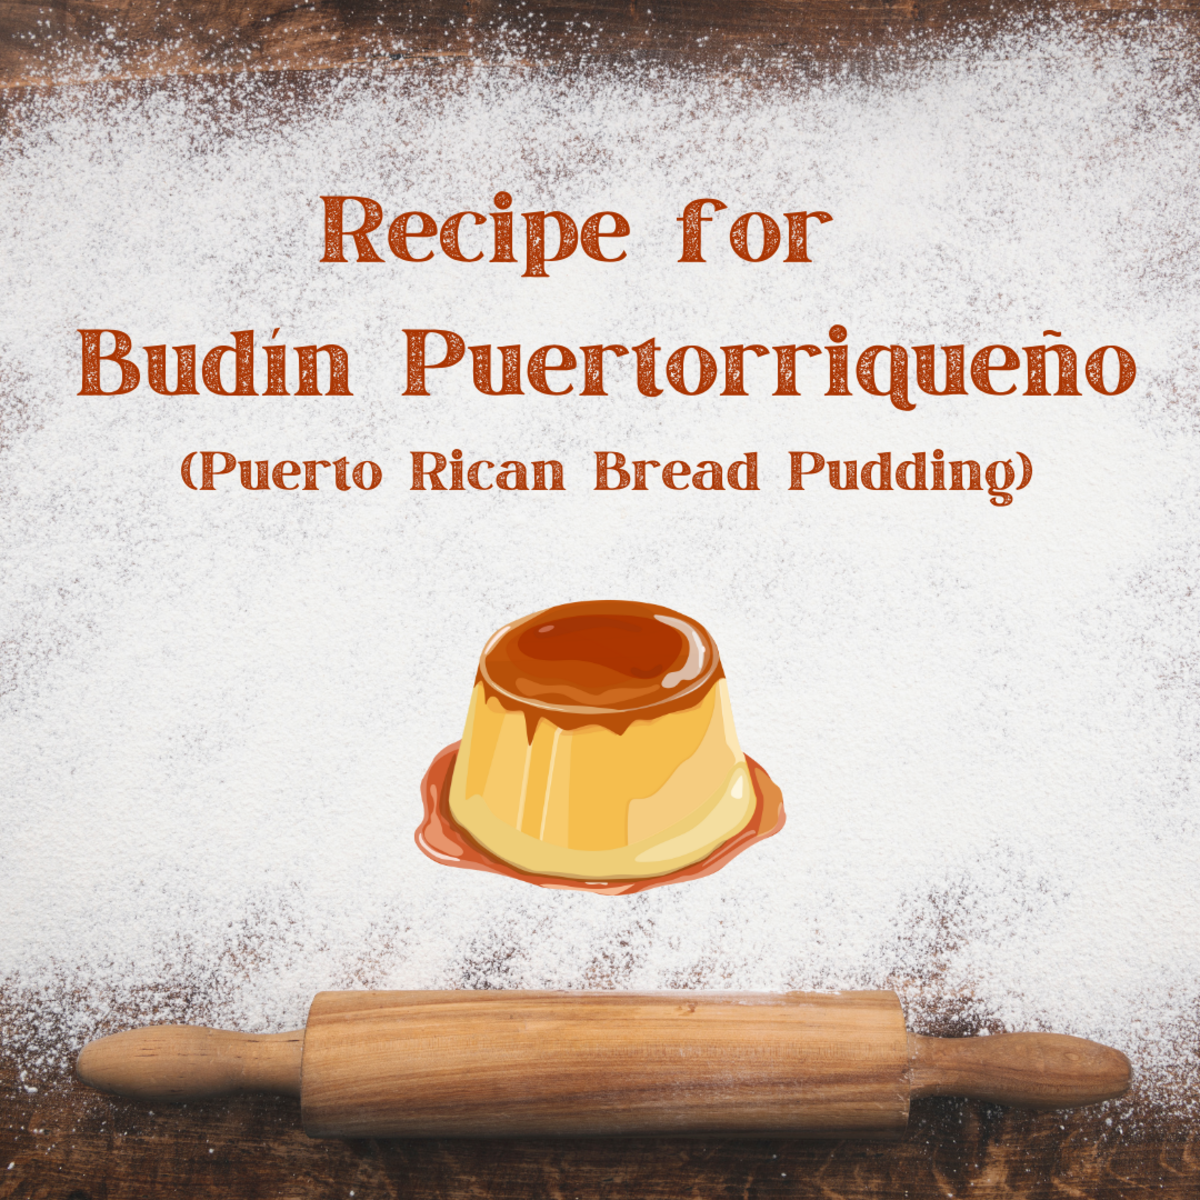 Budín Puertorriqueño (Puerto Rican Bread Pudding) Recipe